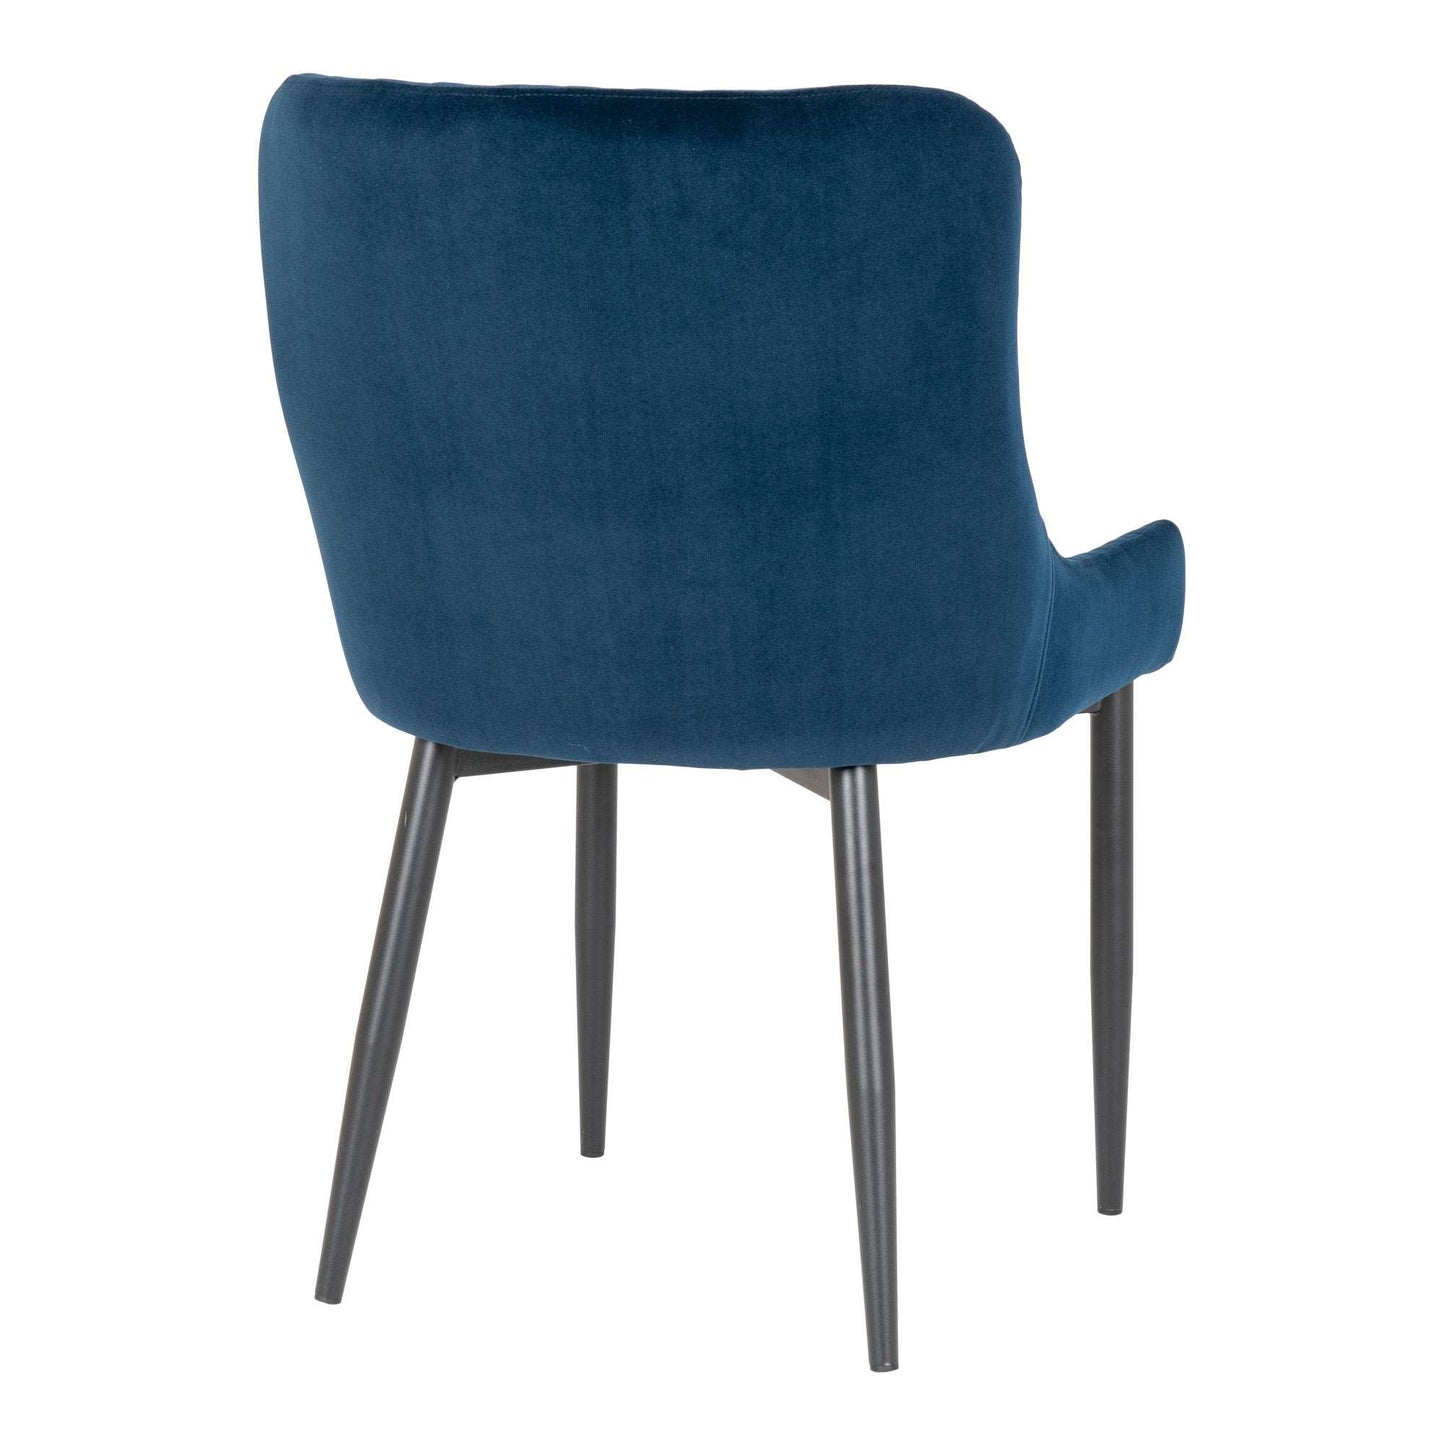 Boston Dining Chair - Stoel in donkerblauw fluweel-Stoel-House Nordic-boston-dining-chair-chair-in-dark-blue-velvet-with-black-legs-5-eetkamerstoel, stoel-Stoel in donkerblauw fluweel met zwarte poten Materiaal Fluweel, staal Kleur Donkerblauw-5713917001217-1001230-Cerasus Homestyle